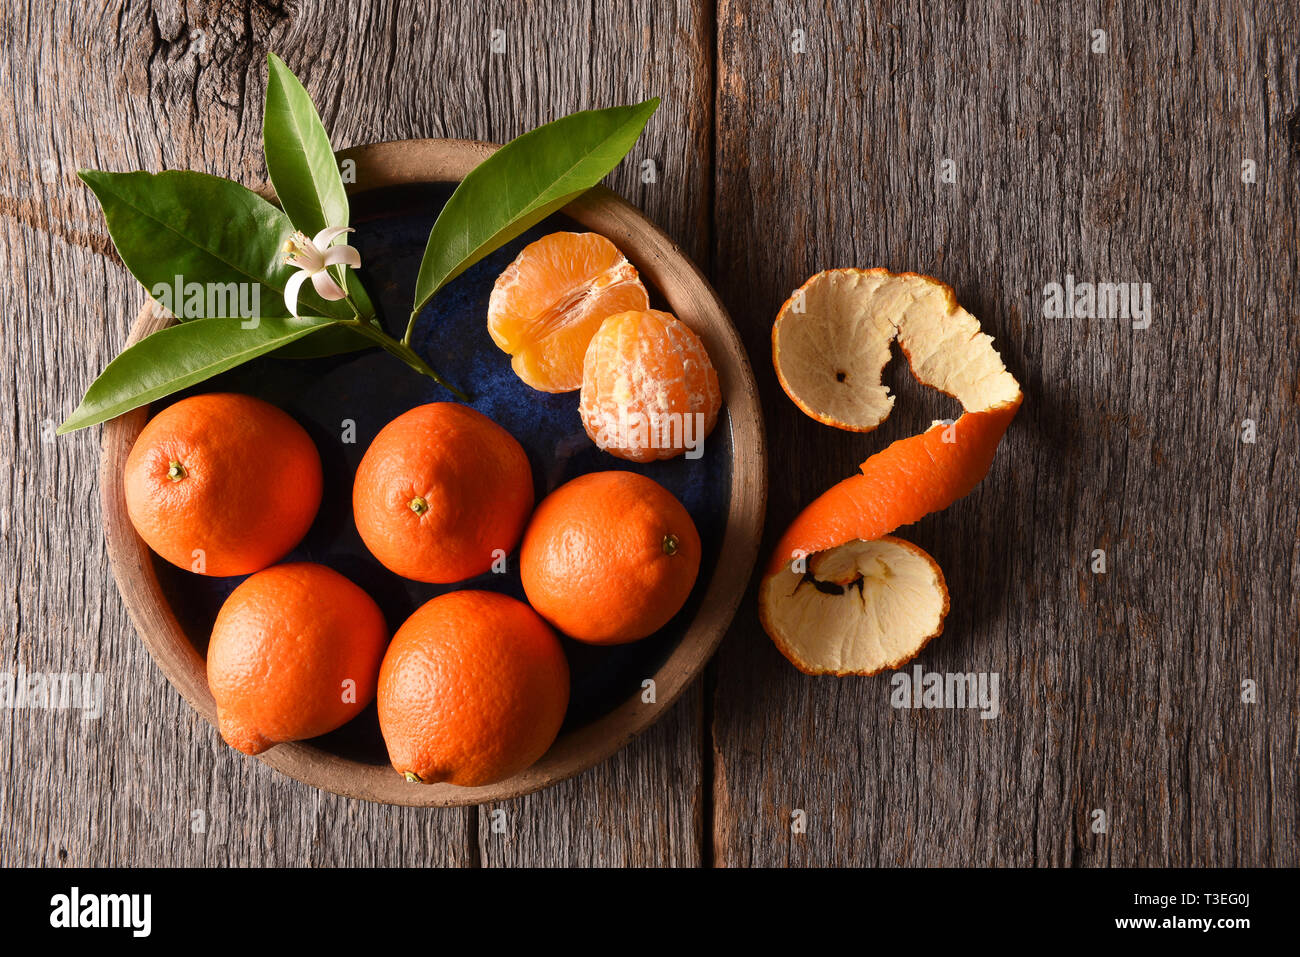 I Tangelos Minneola: primo piano della frutta sbucciata su una piastra con foglie e fiori d'arancio su una tavola in legno rustico. Foto Stock